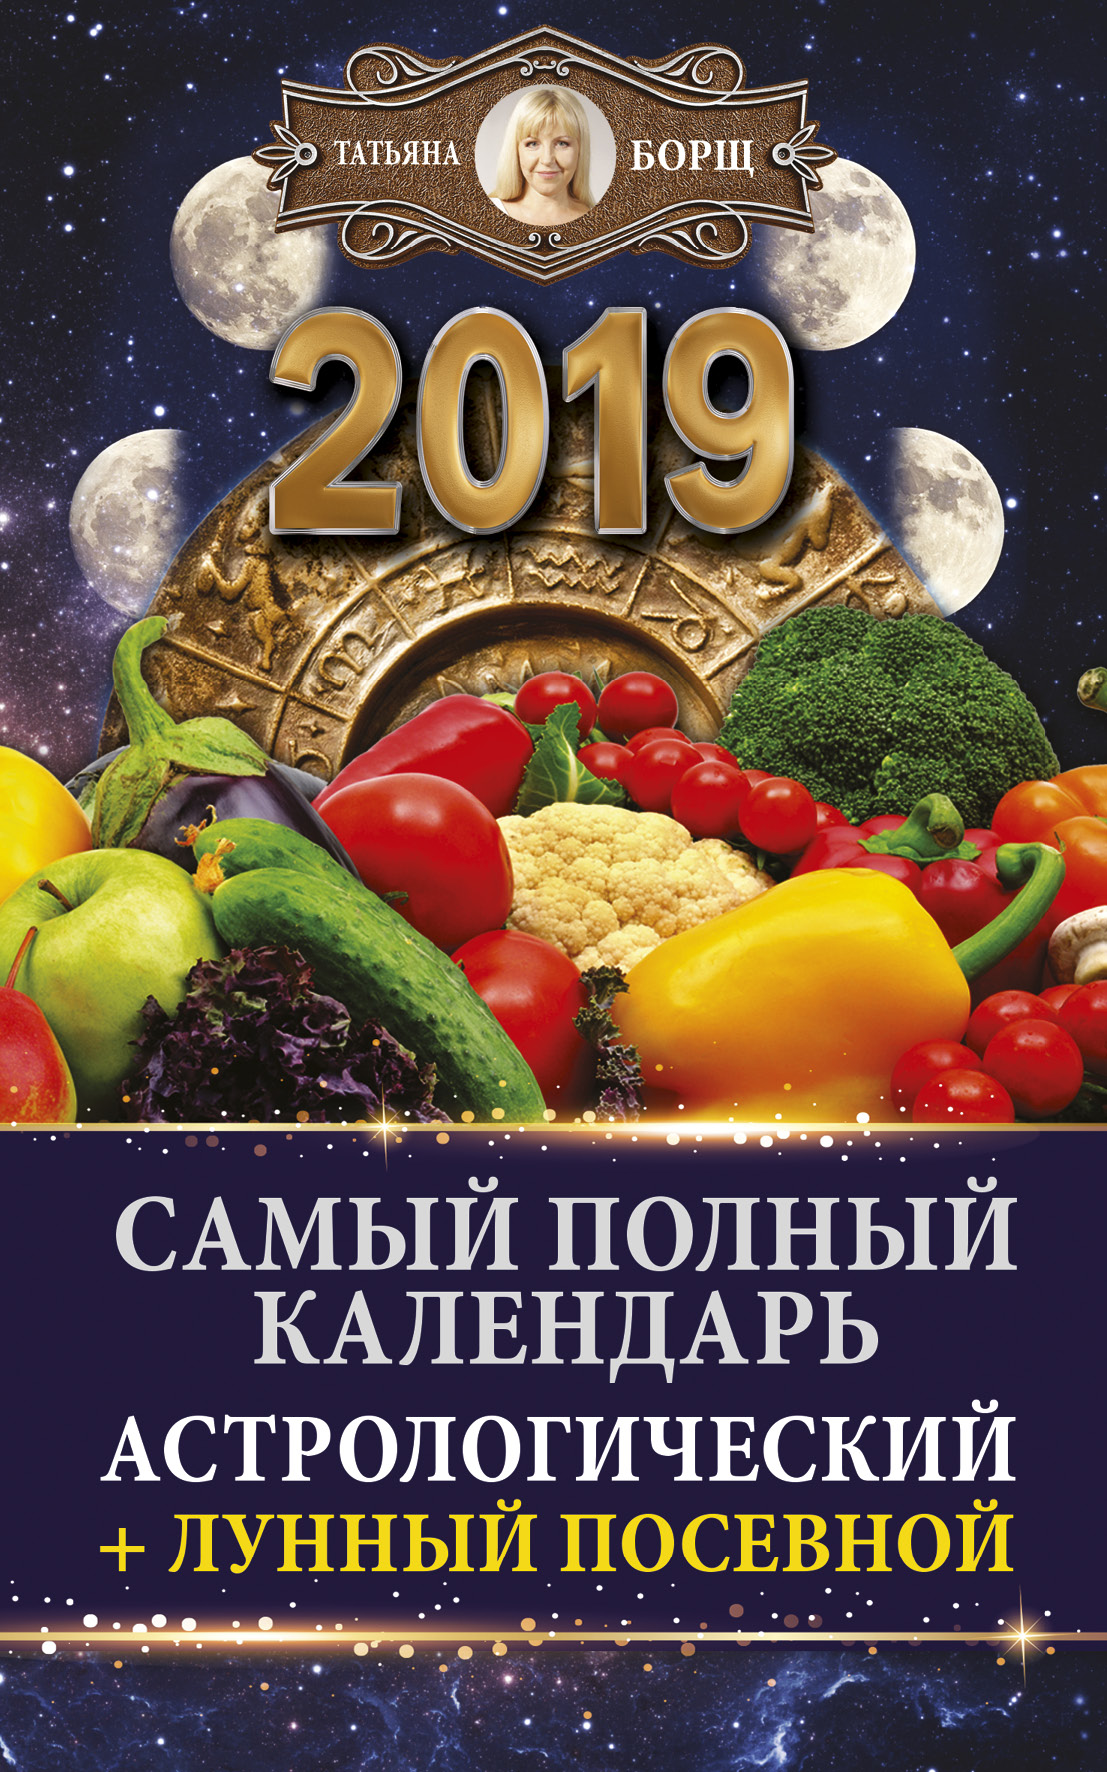 Борщ Татьяна Самый полный календарь на 2019 год: астрологический + лунный посевной - страница 0